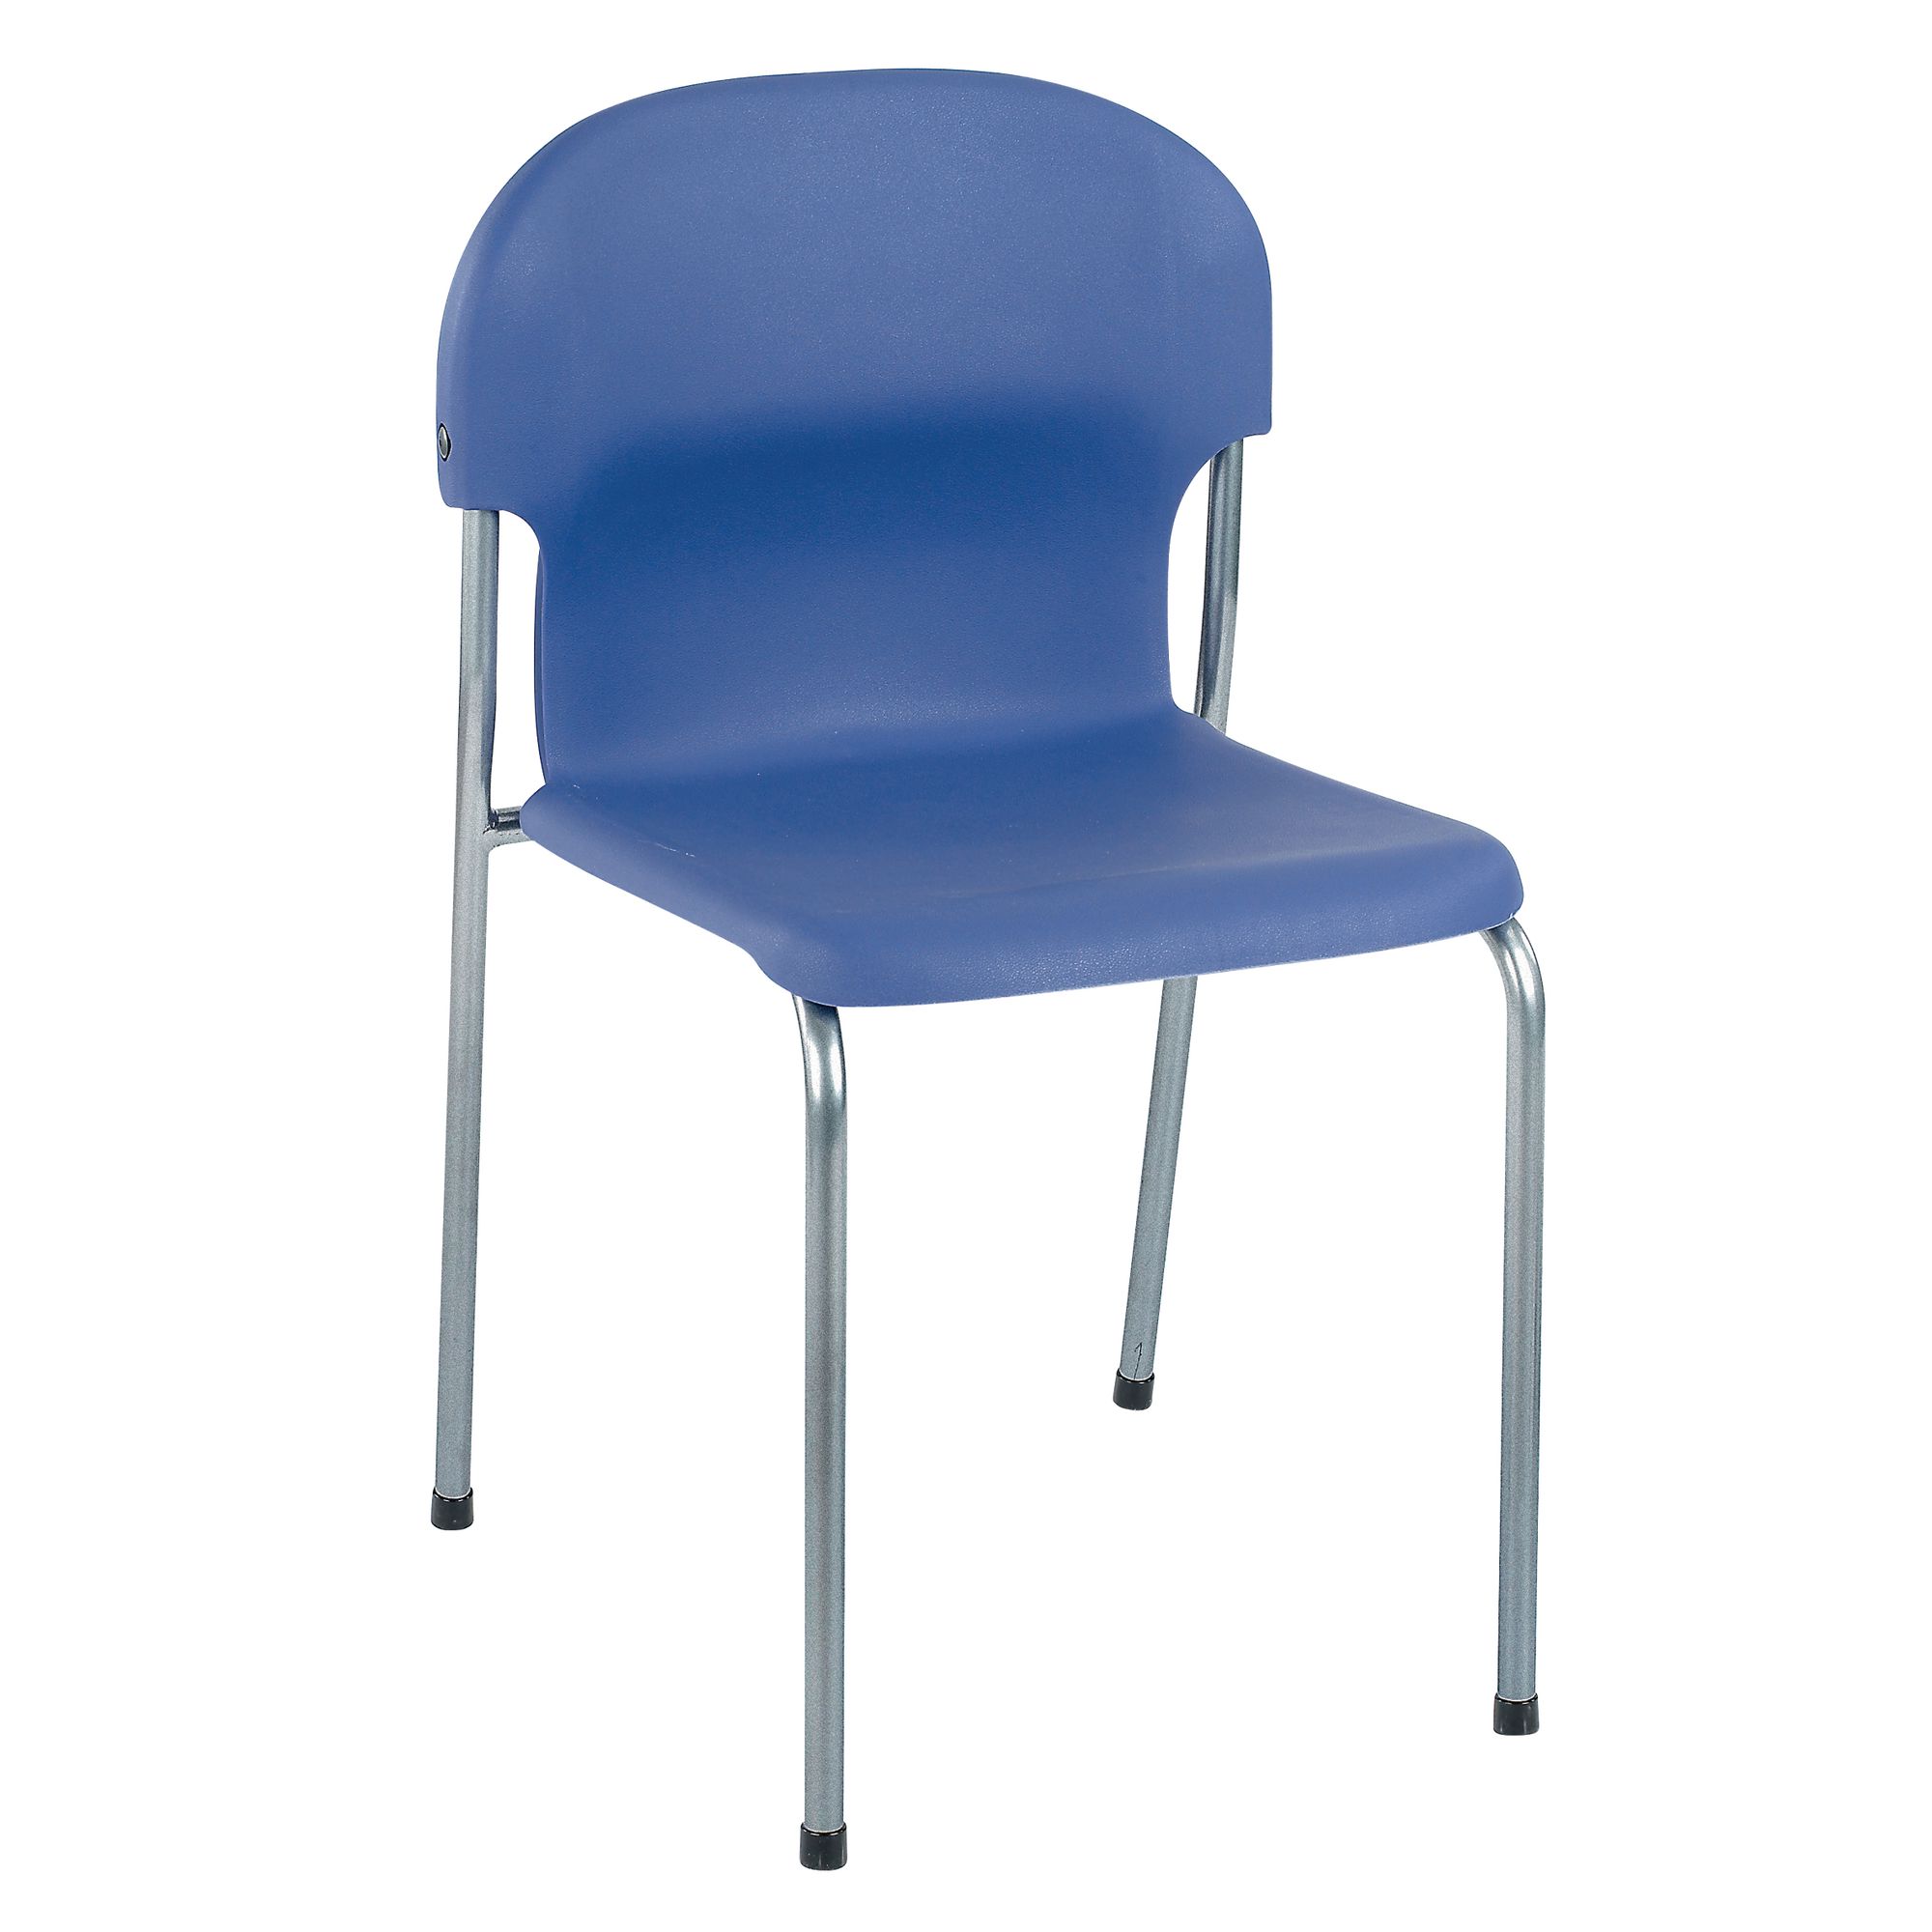 Chair 2000 H380mm - Blue